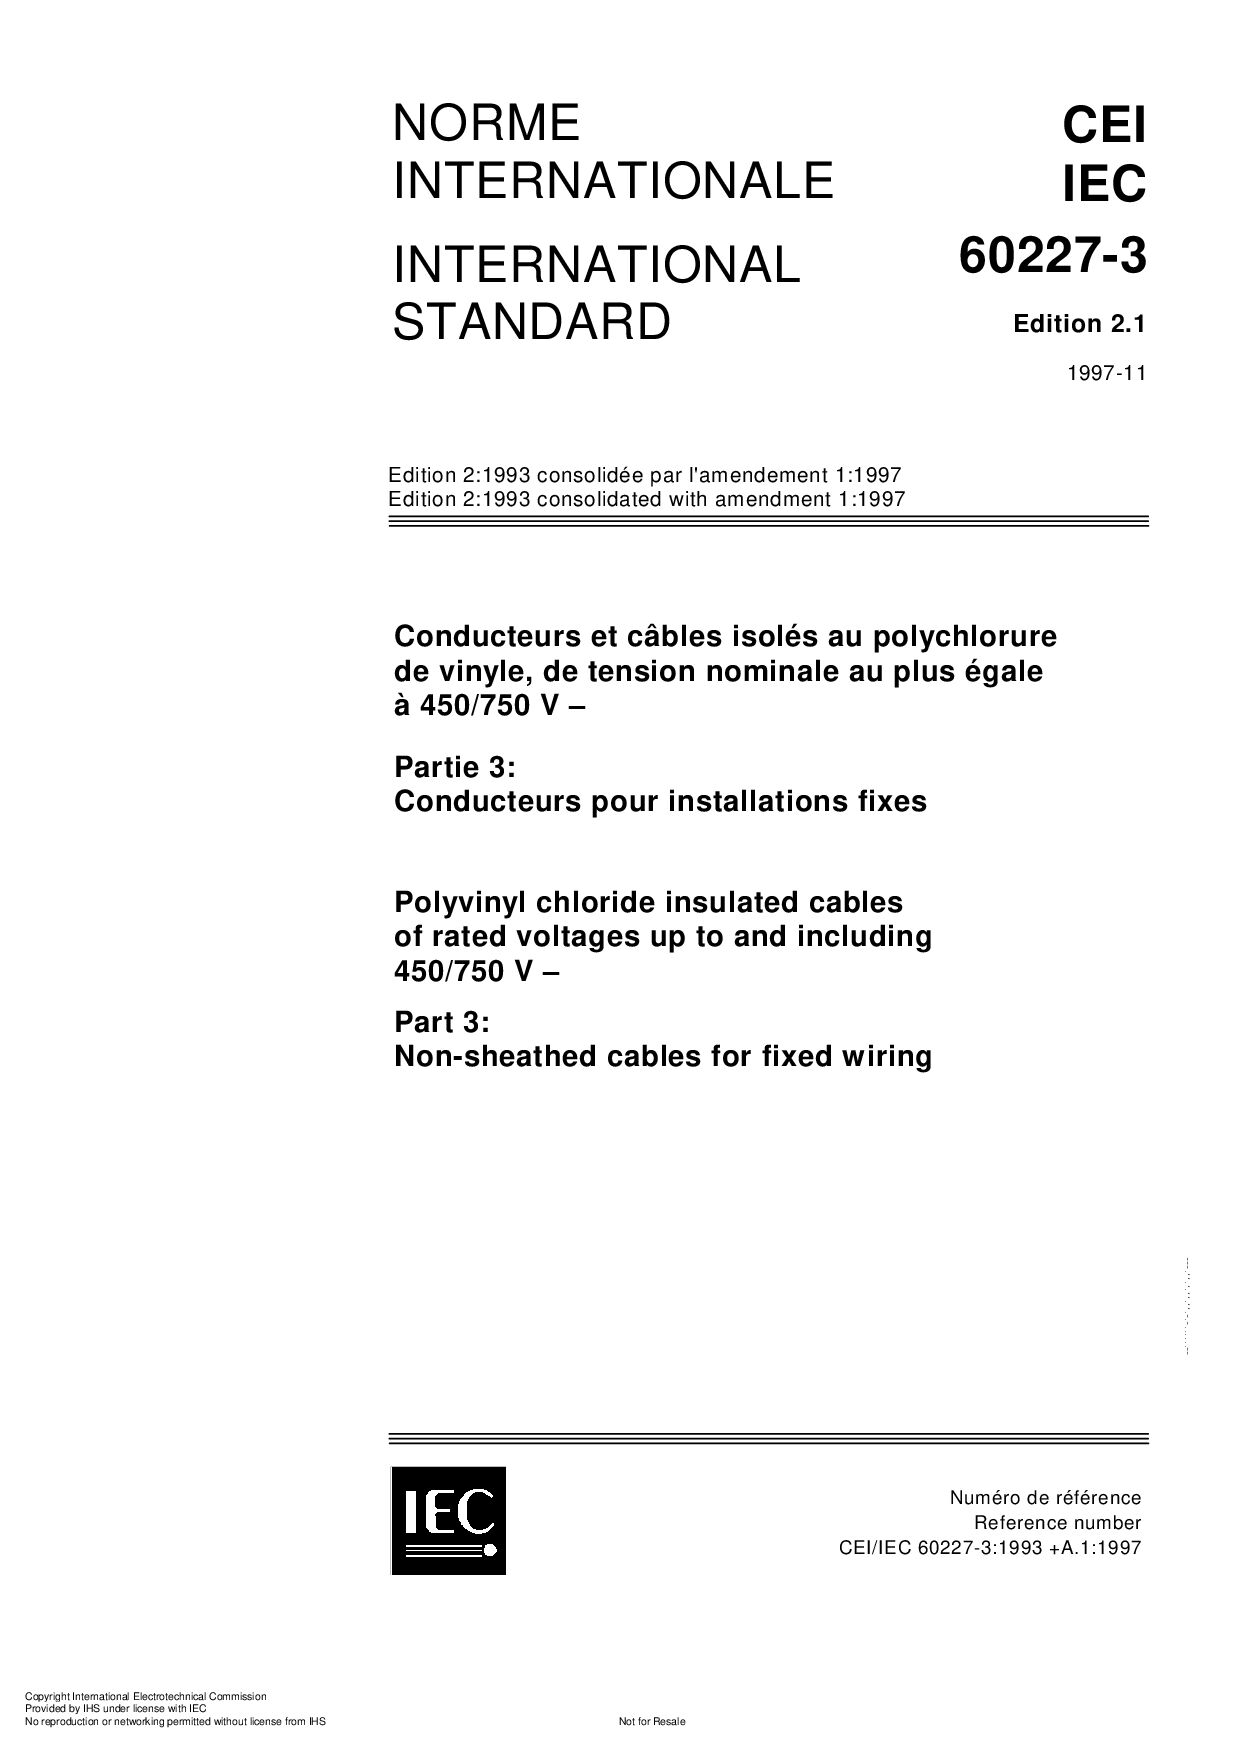 IEC 60227-3:1997